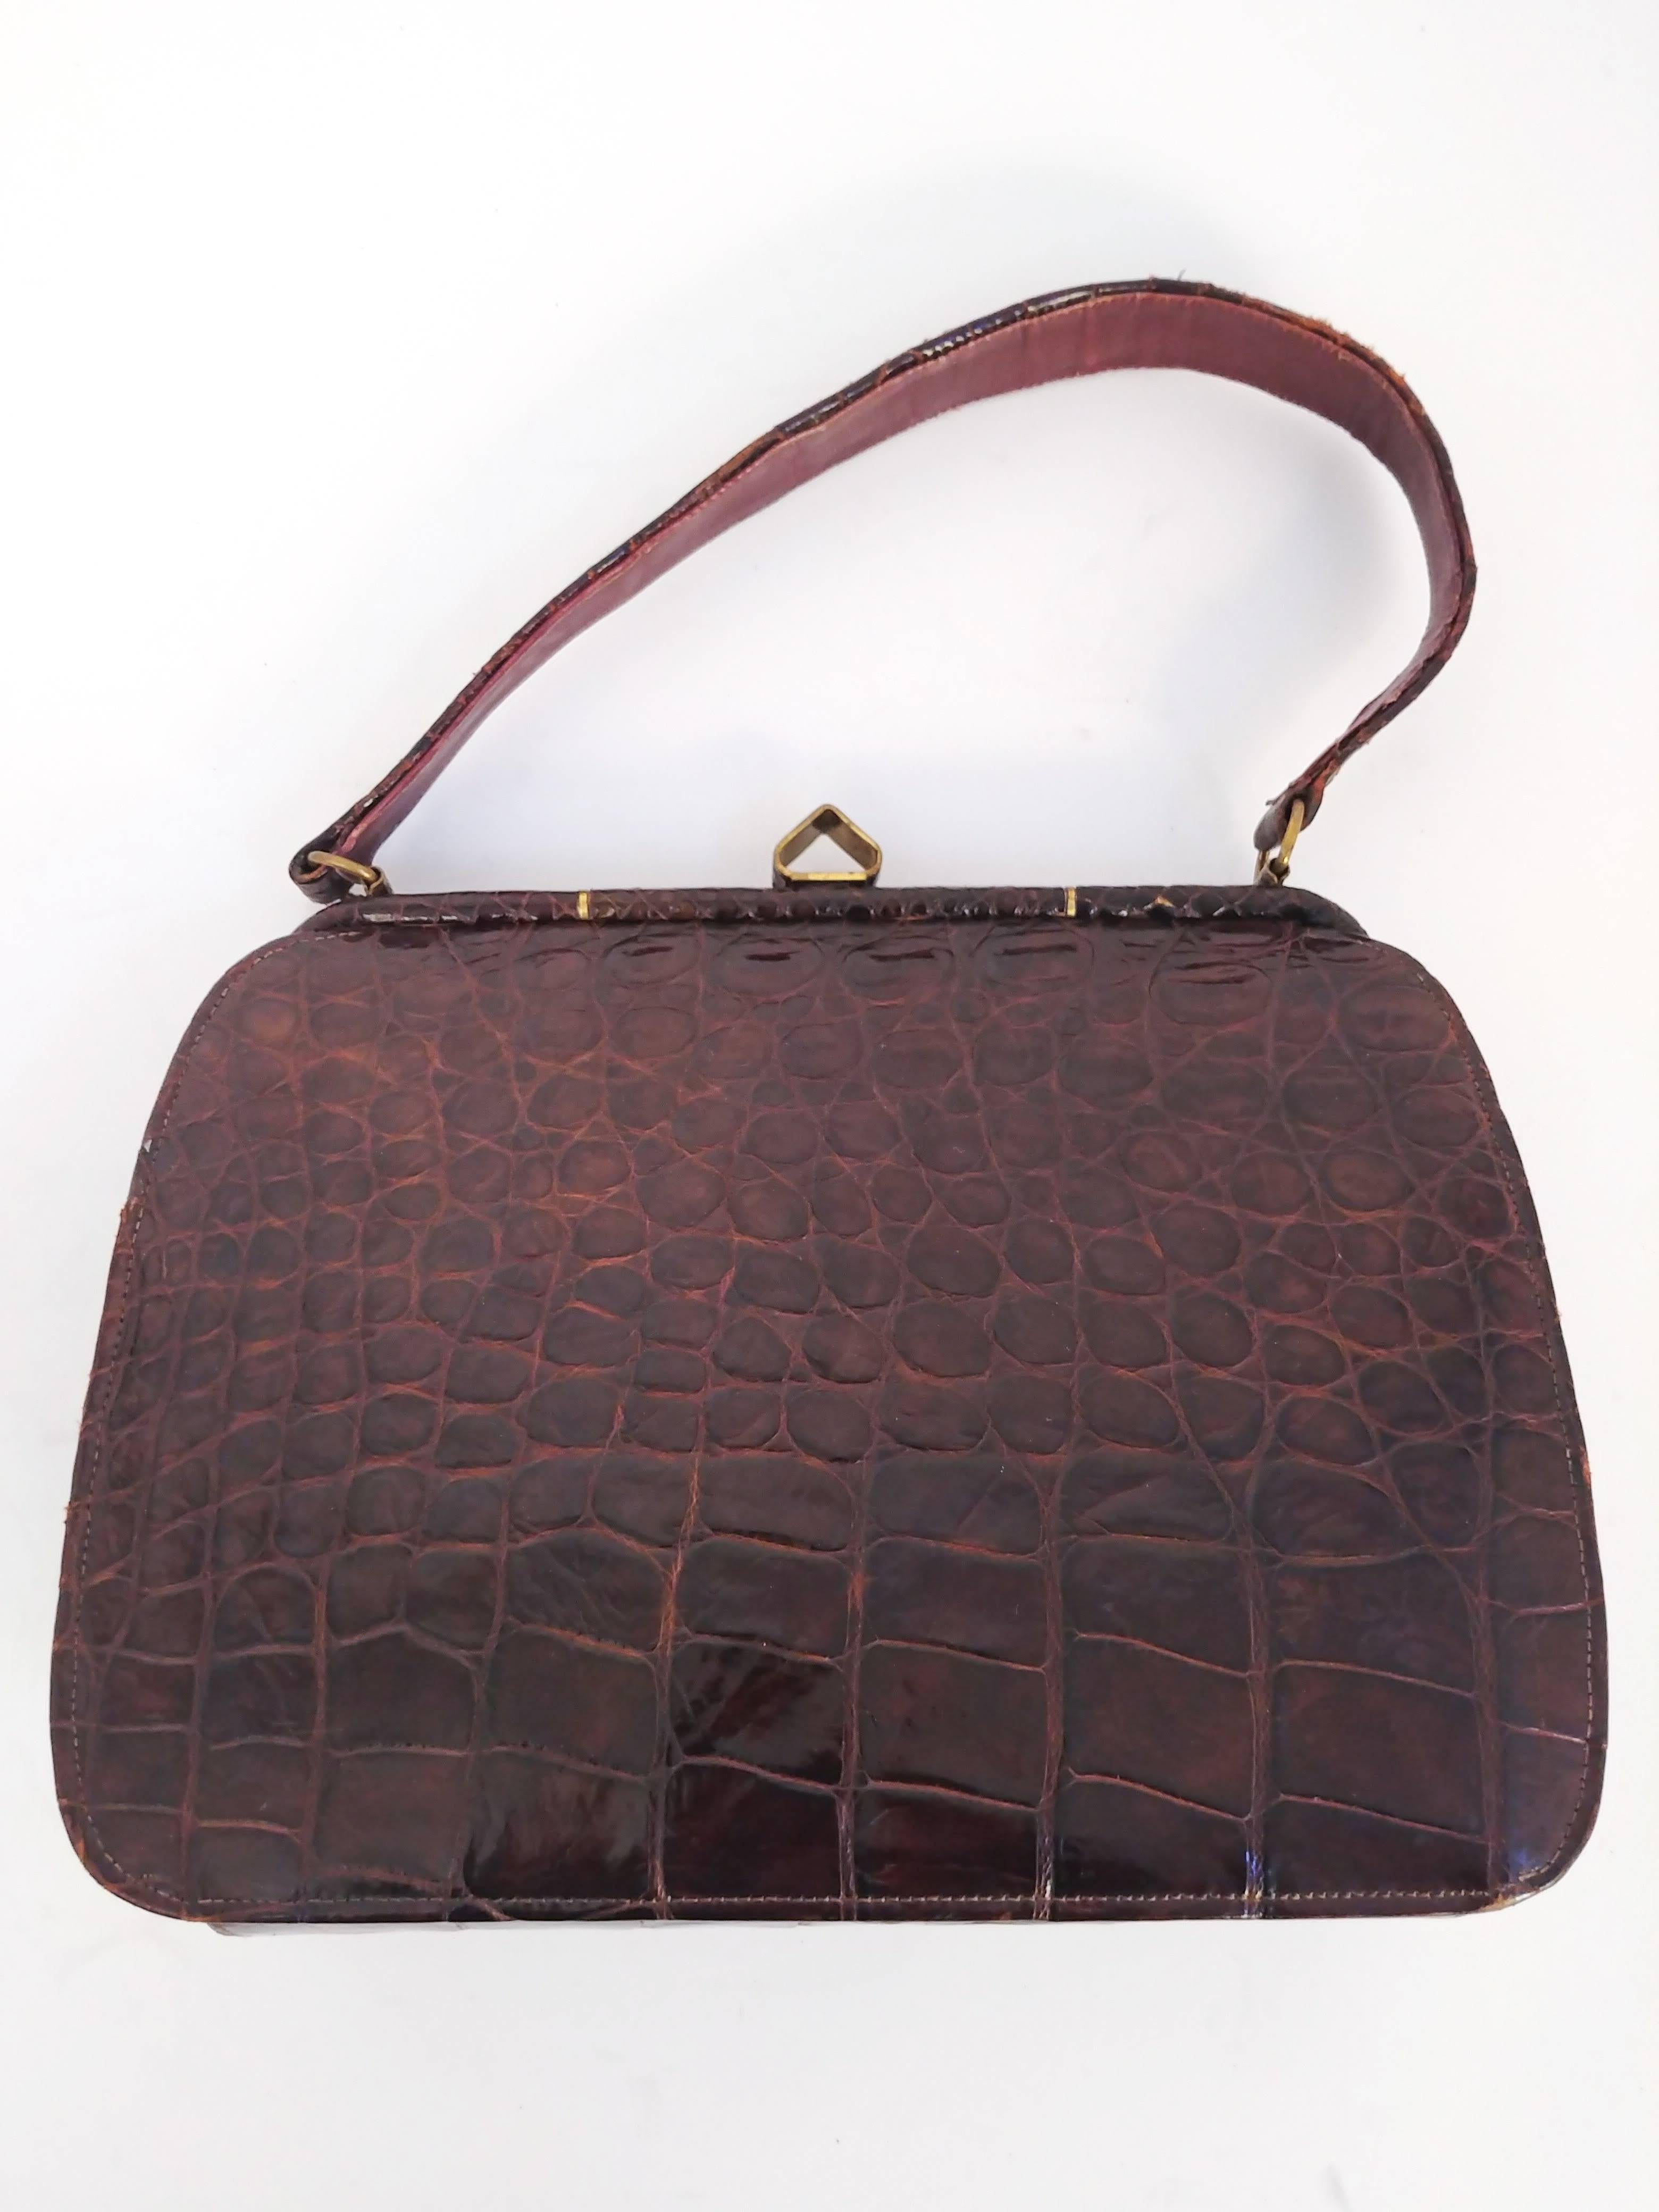 sac à main en alligator brun des années 1950. Intéressant fermoir décoratif de forme en or sur le dessus. Doublure en cuir. 